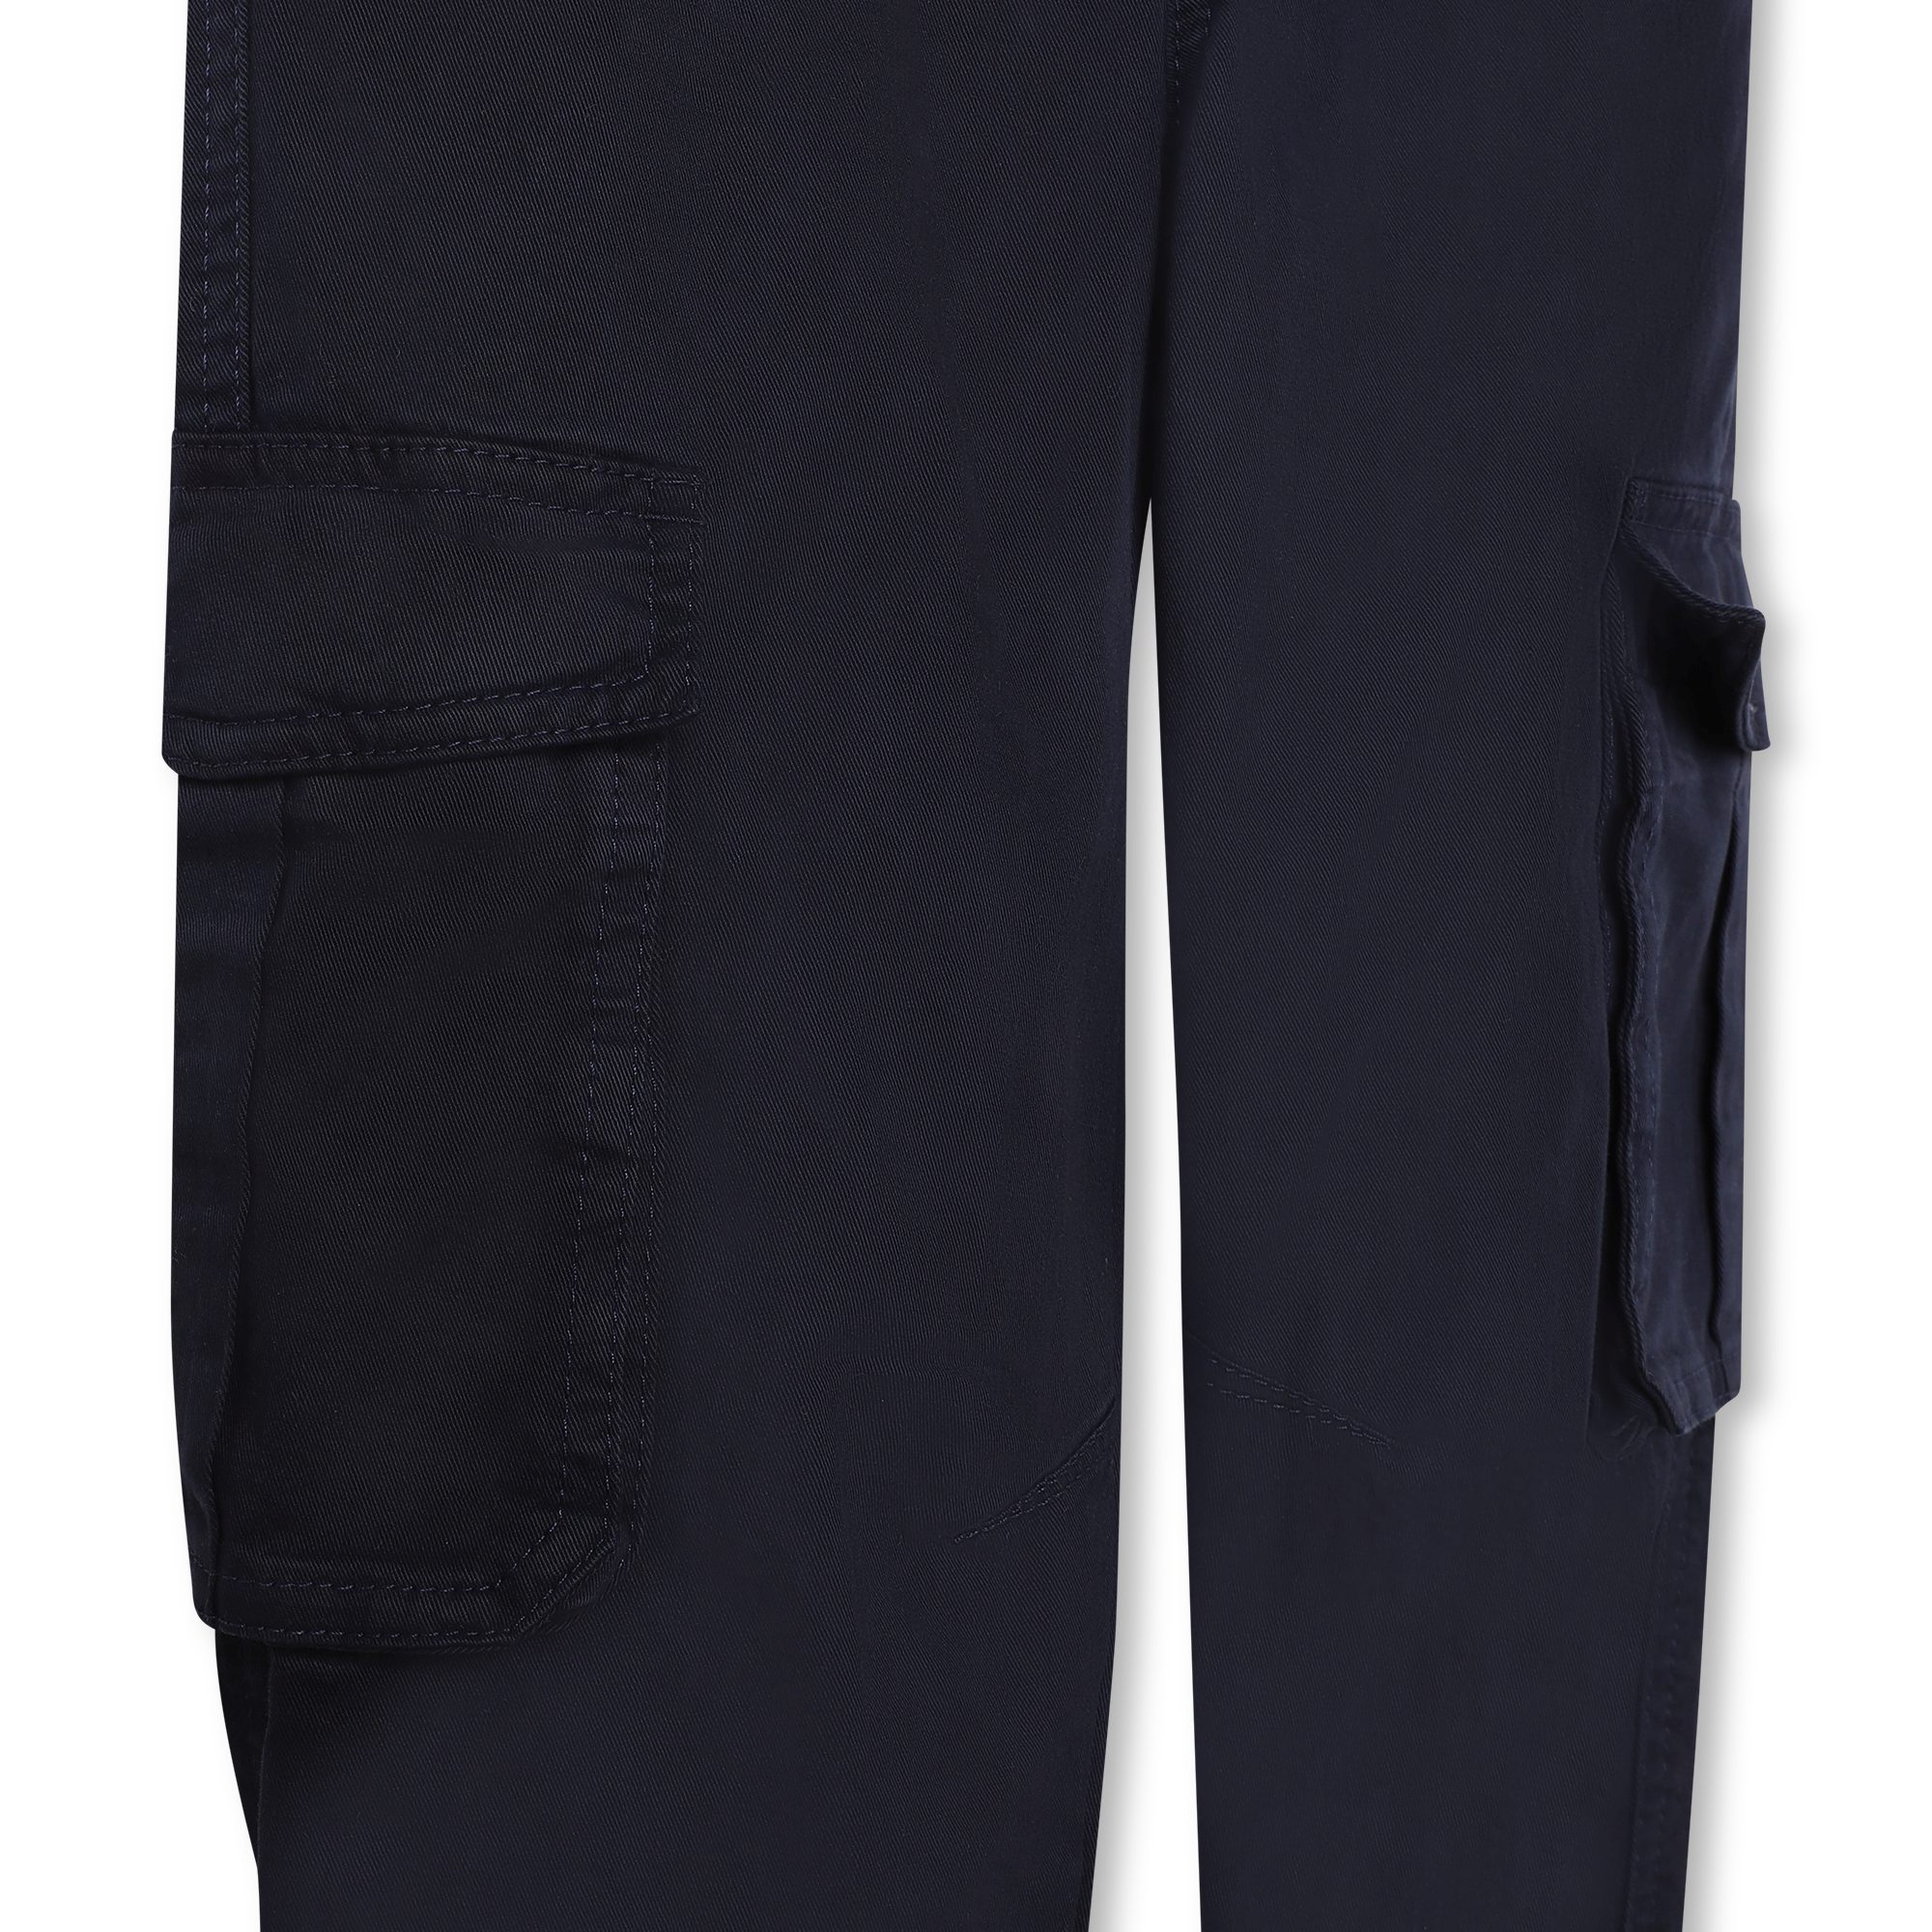 Pantalón de cintura ajustable ZADIG & VOLTAIRE para NIÑO